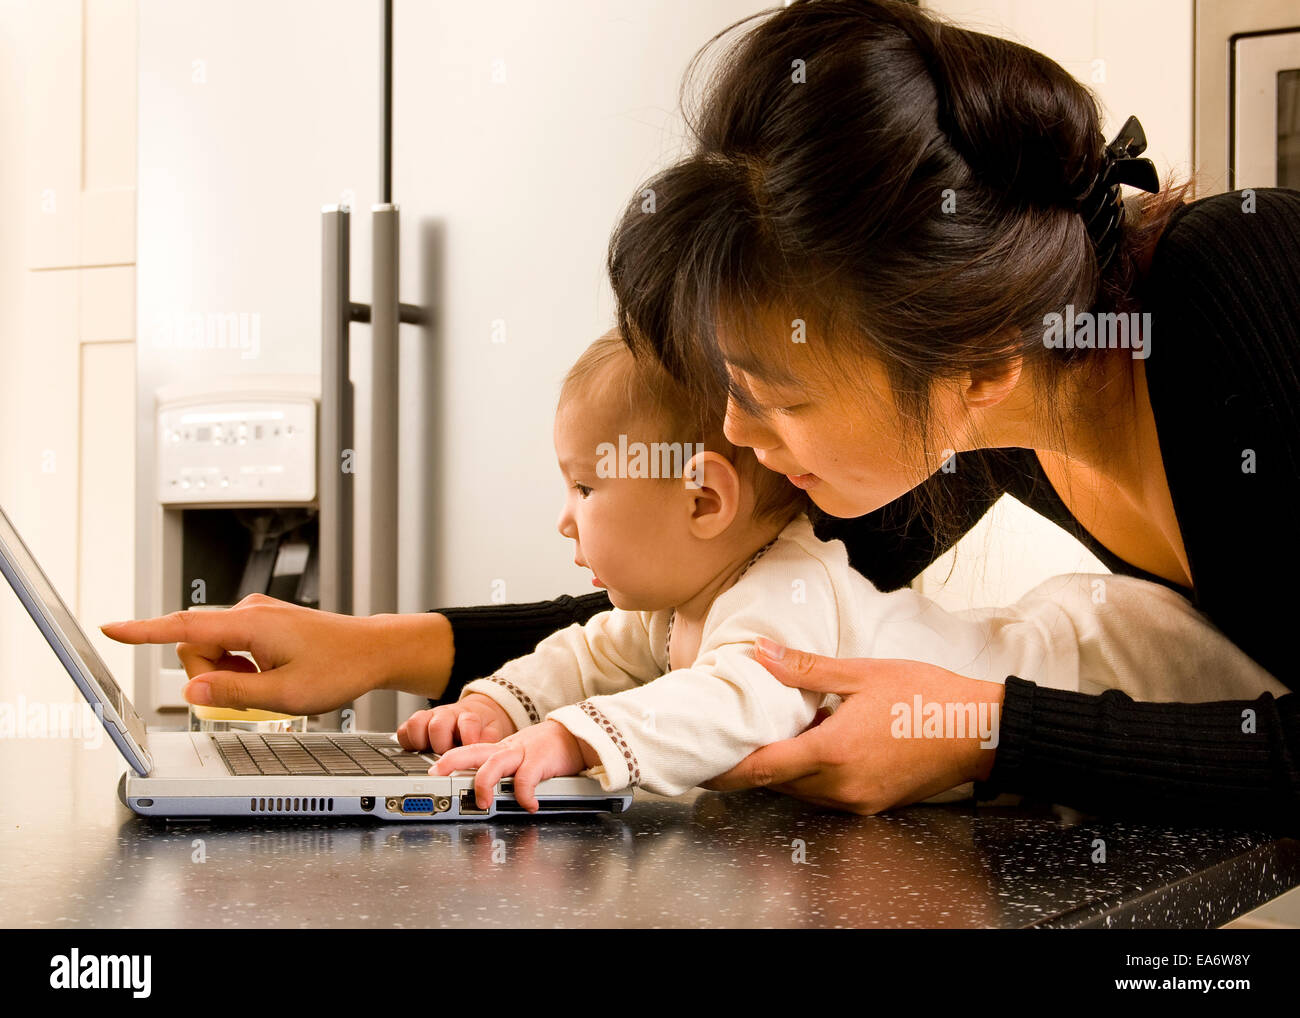 beschäftigt junge koreanische asiatische Mama mit Laptop-Computer in der modernen Küche hält 5 Monate altes gemischt Rennen (asiatische / caucasian) baby Stockfoto